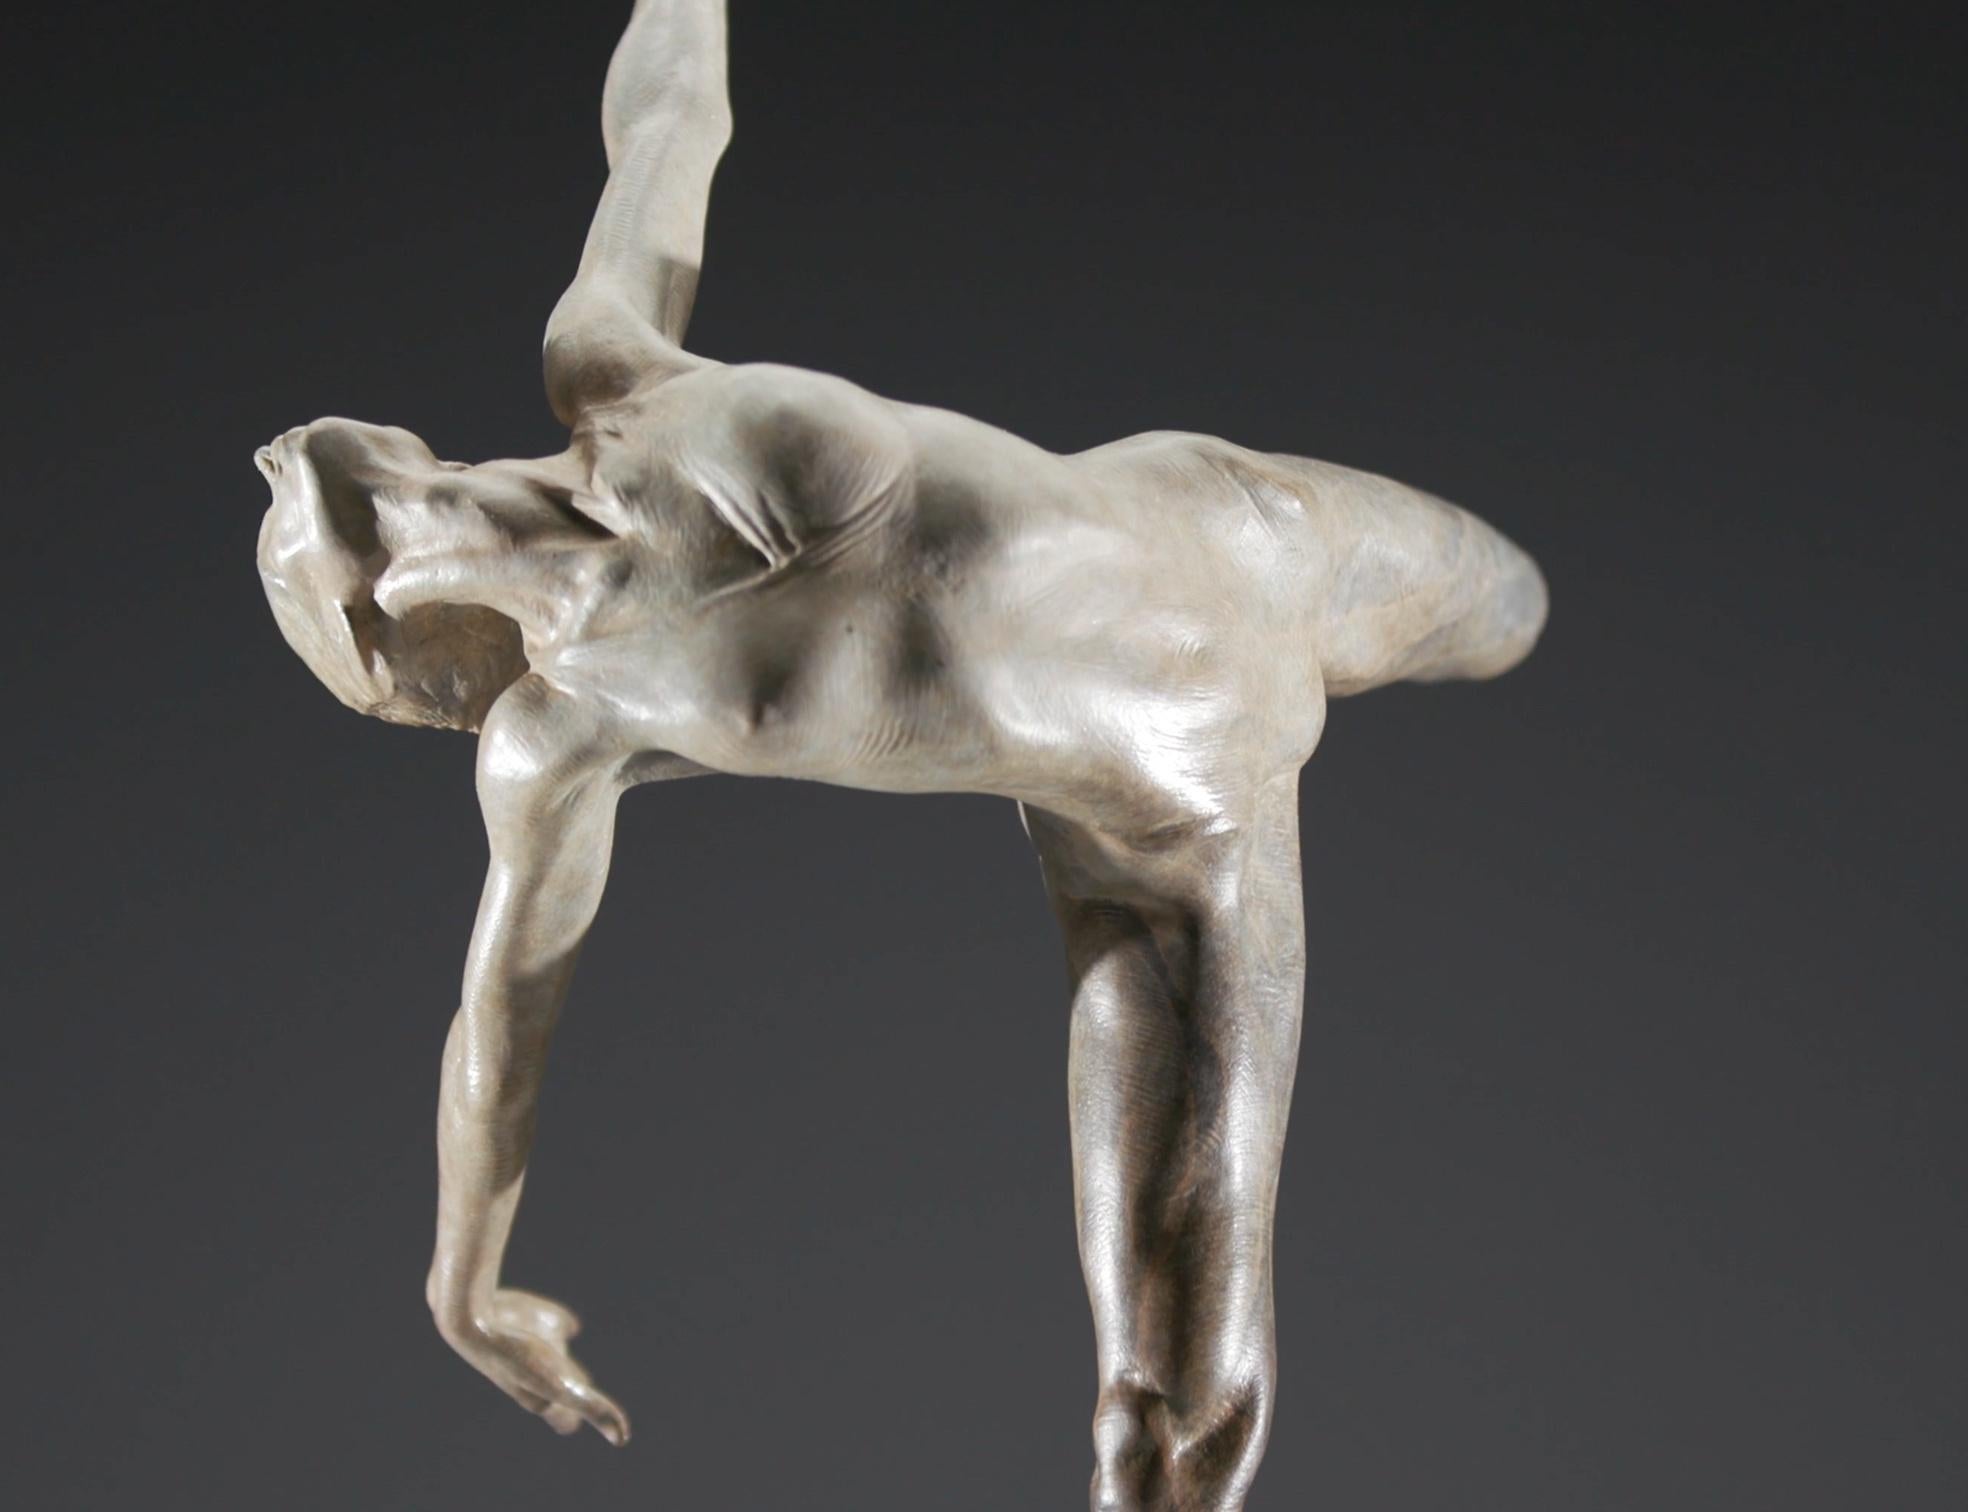 Flug in Haltung, Atelier – Sculpture von Richard MacDonald